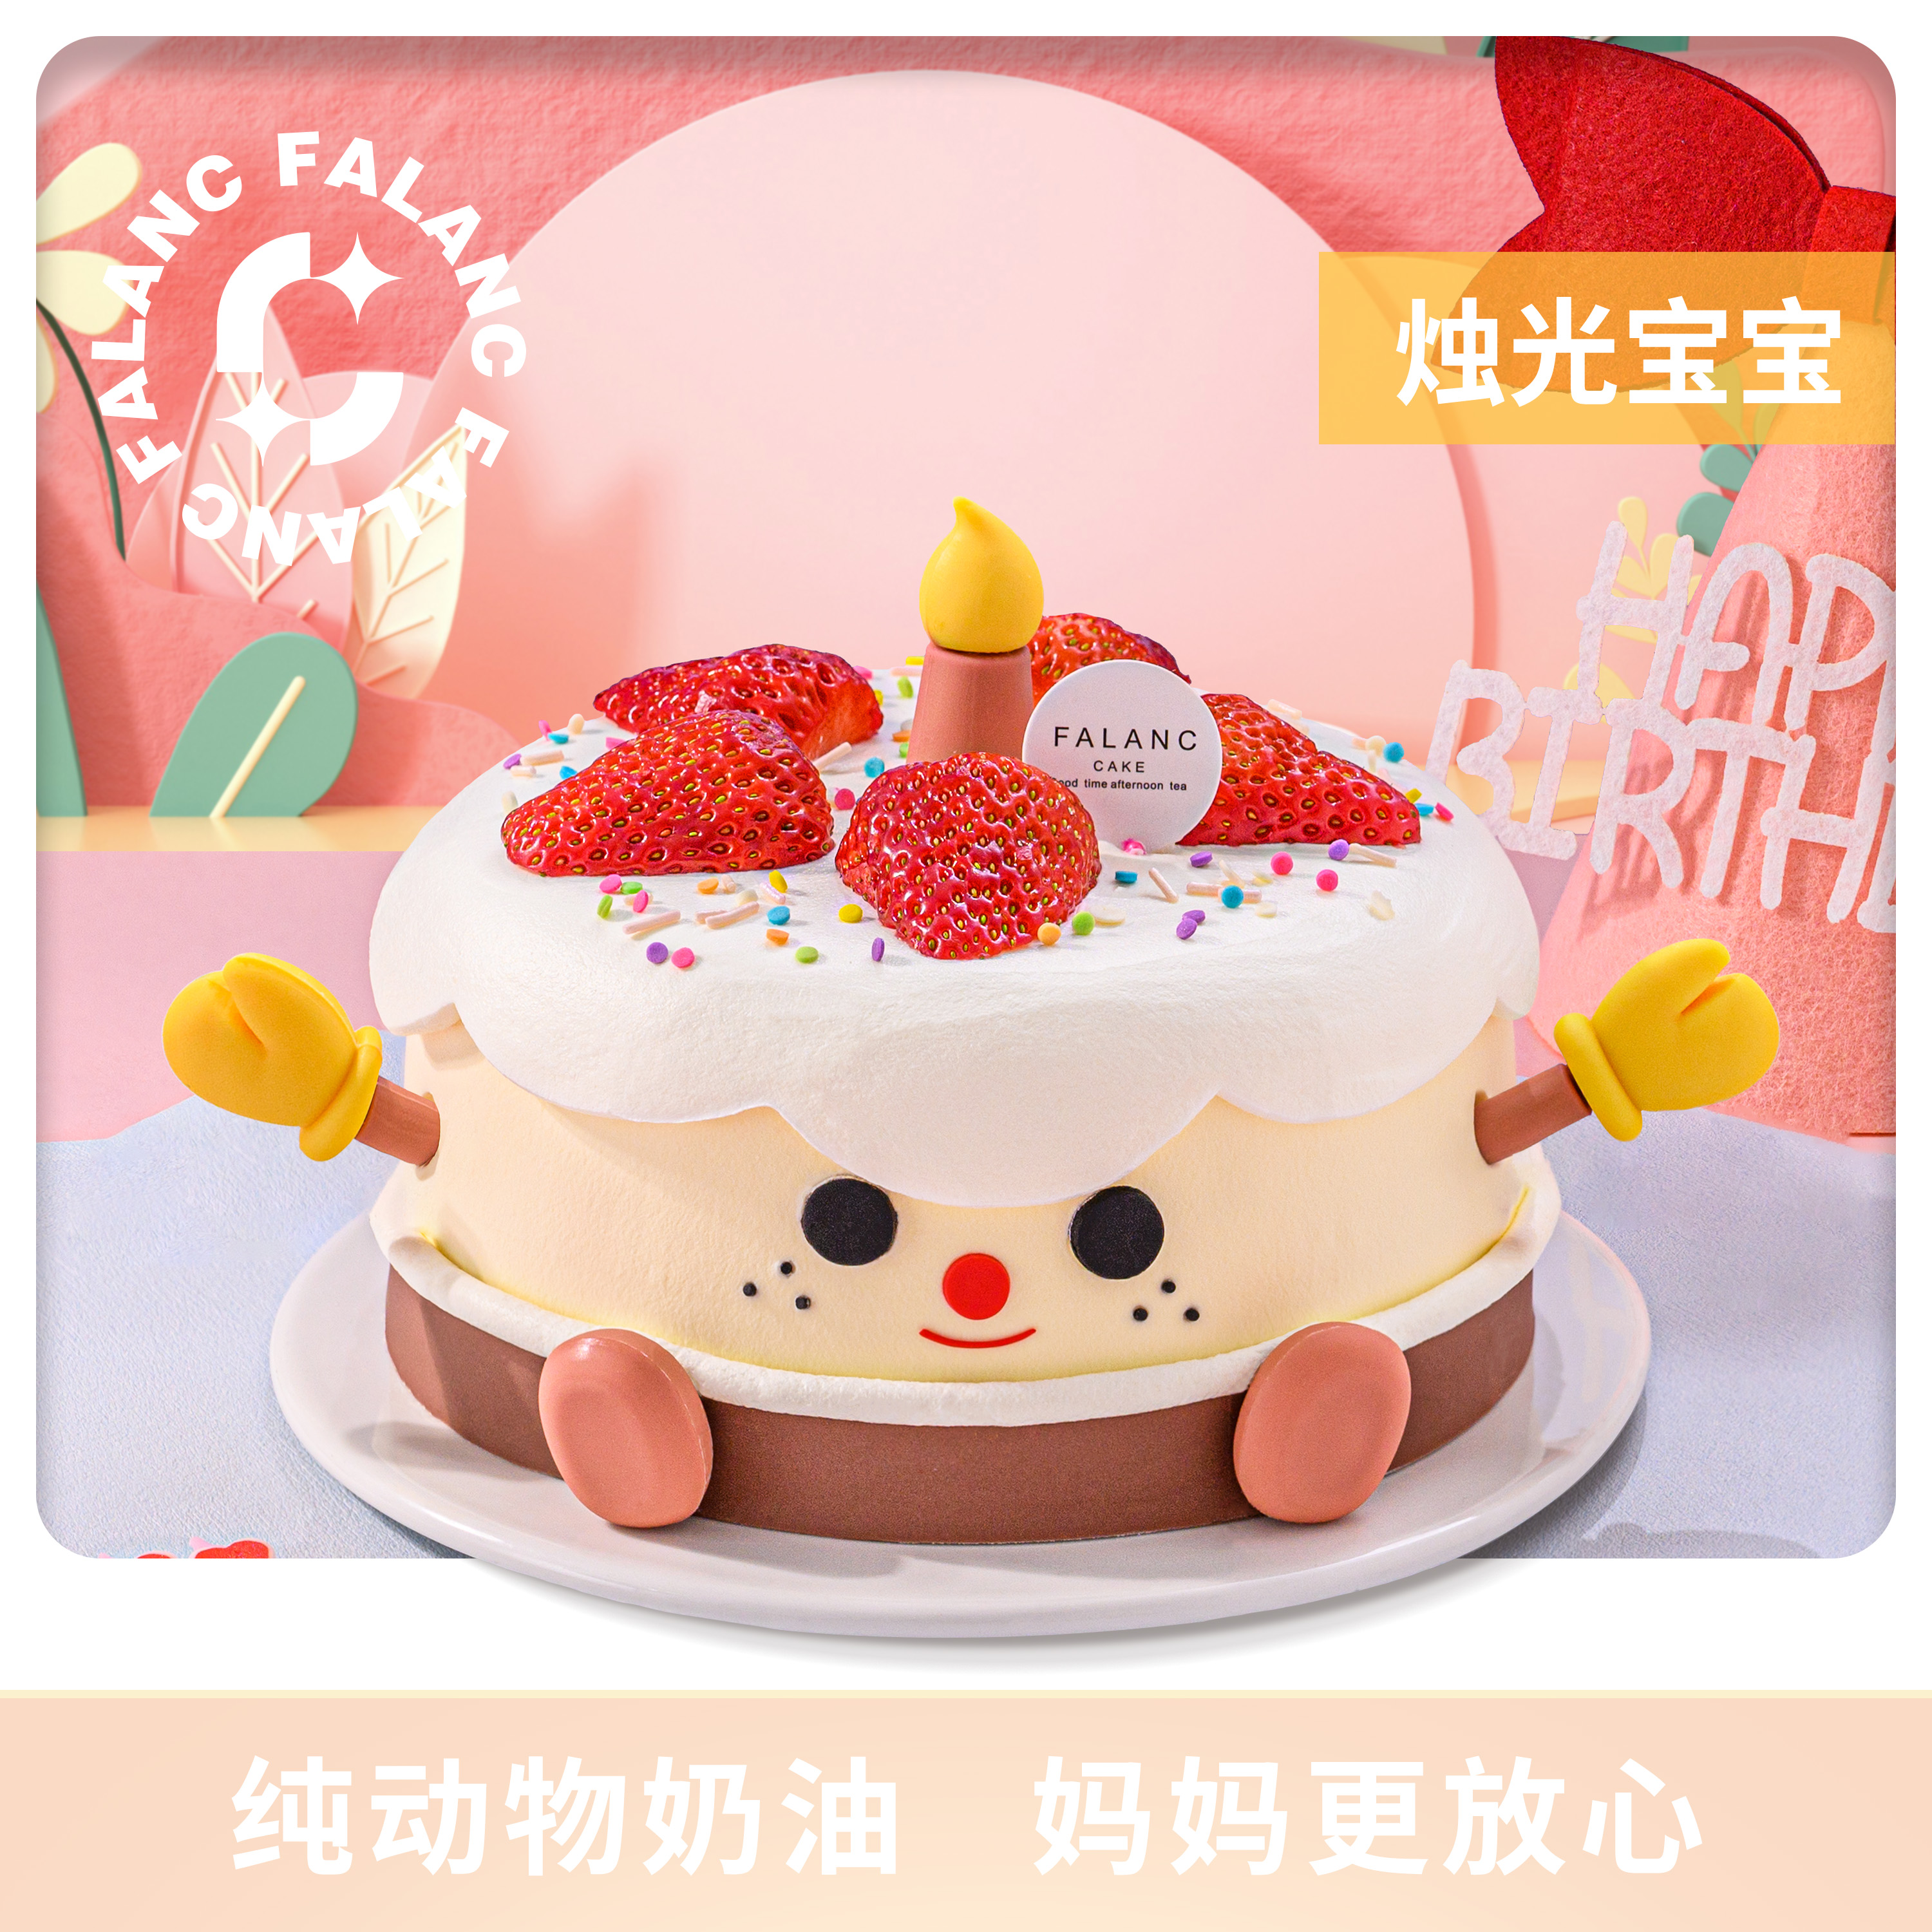 FALANC烛光宝宝动物奶油儿童生日蛋糕北京上海广州深圳同城配送